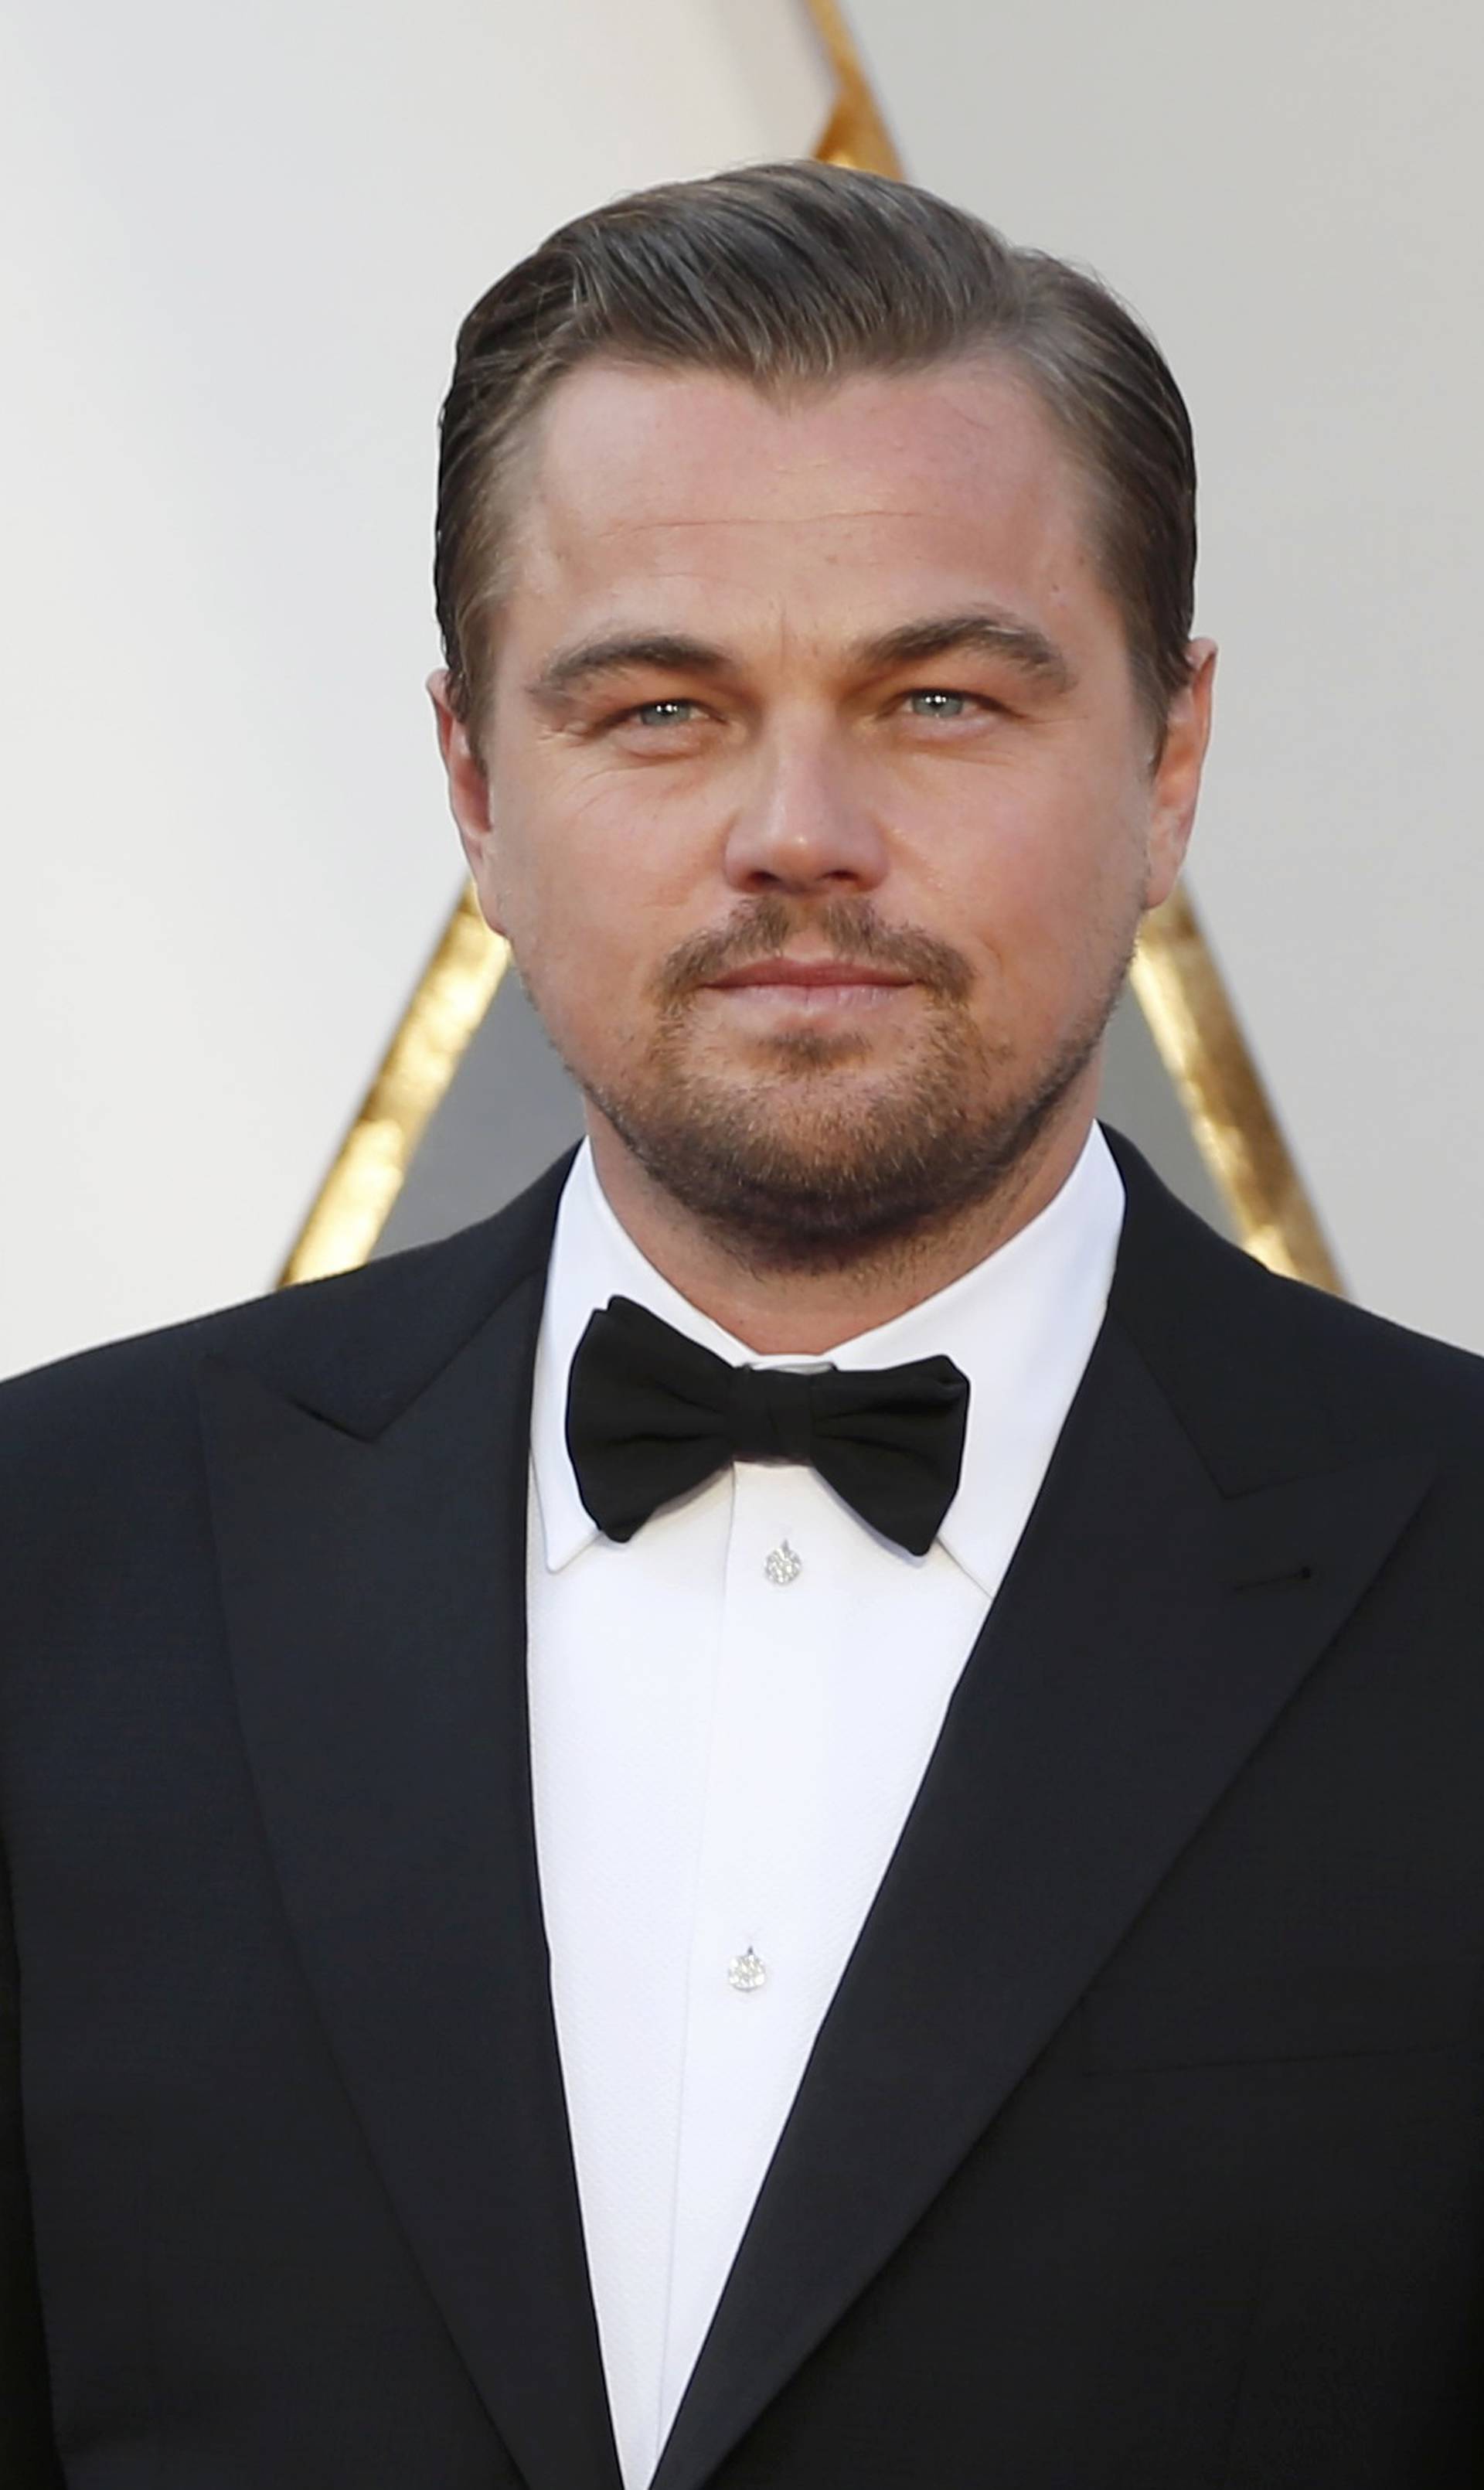 Leonardo DiCaprio donirao 650 milijuna kuna za spas planete...